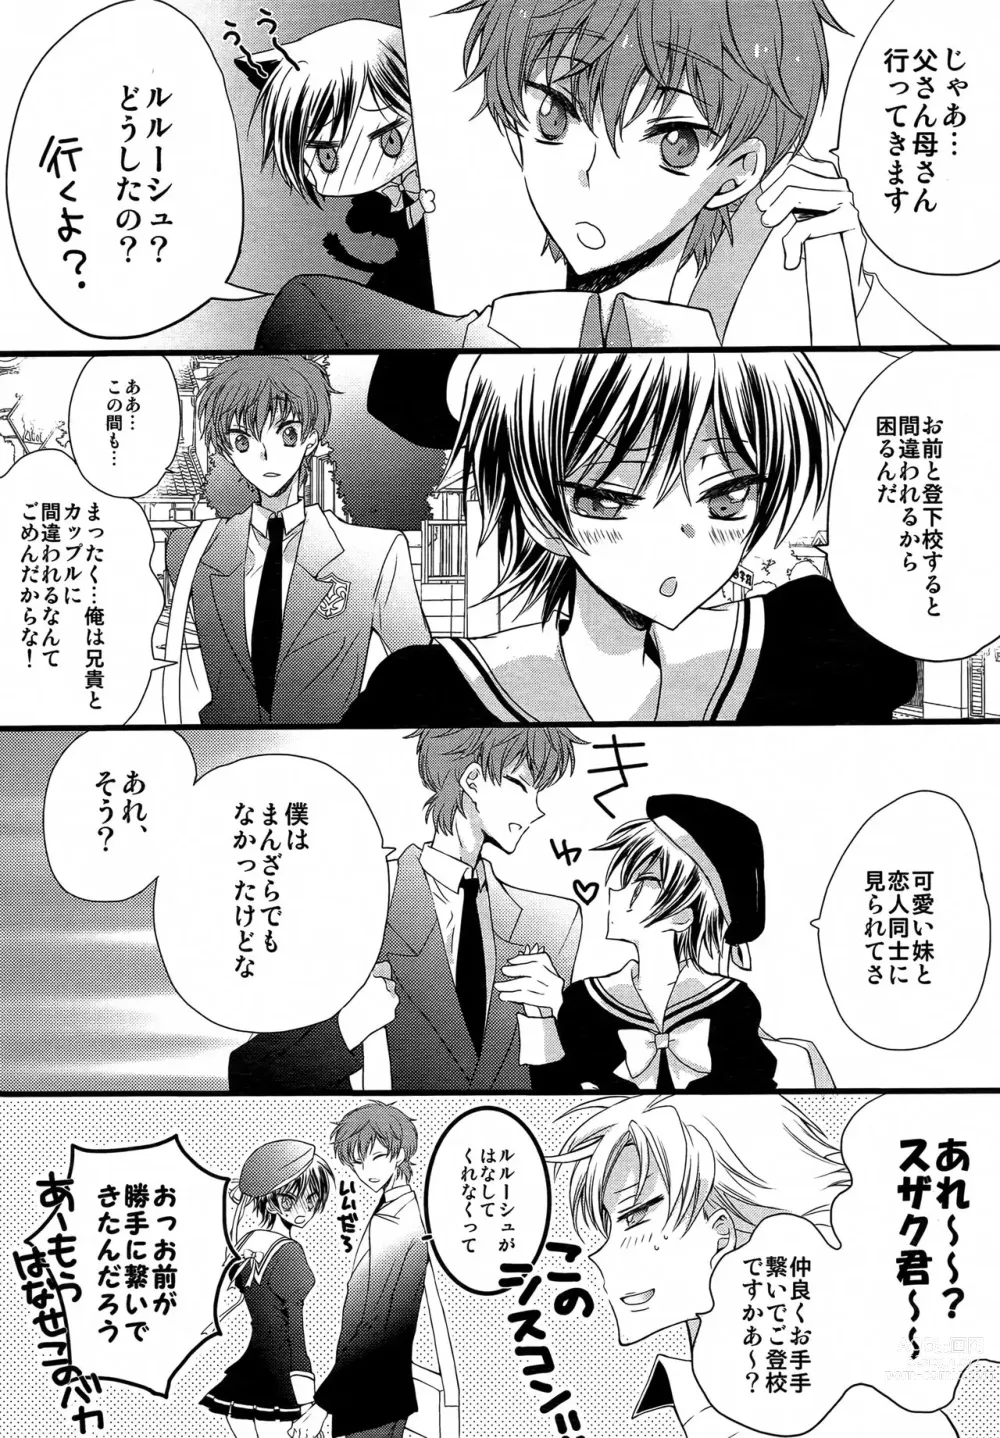 Page 4 of doujinshi Boku no Imouto ga Konna ni Kawaii Wake